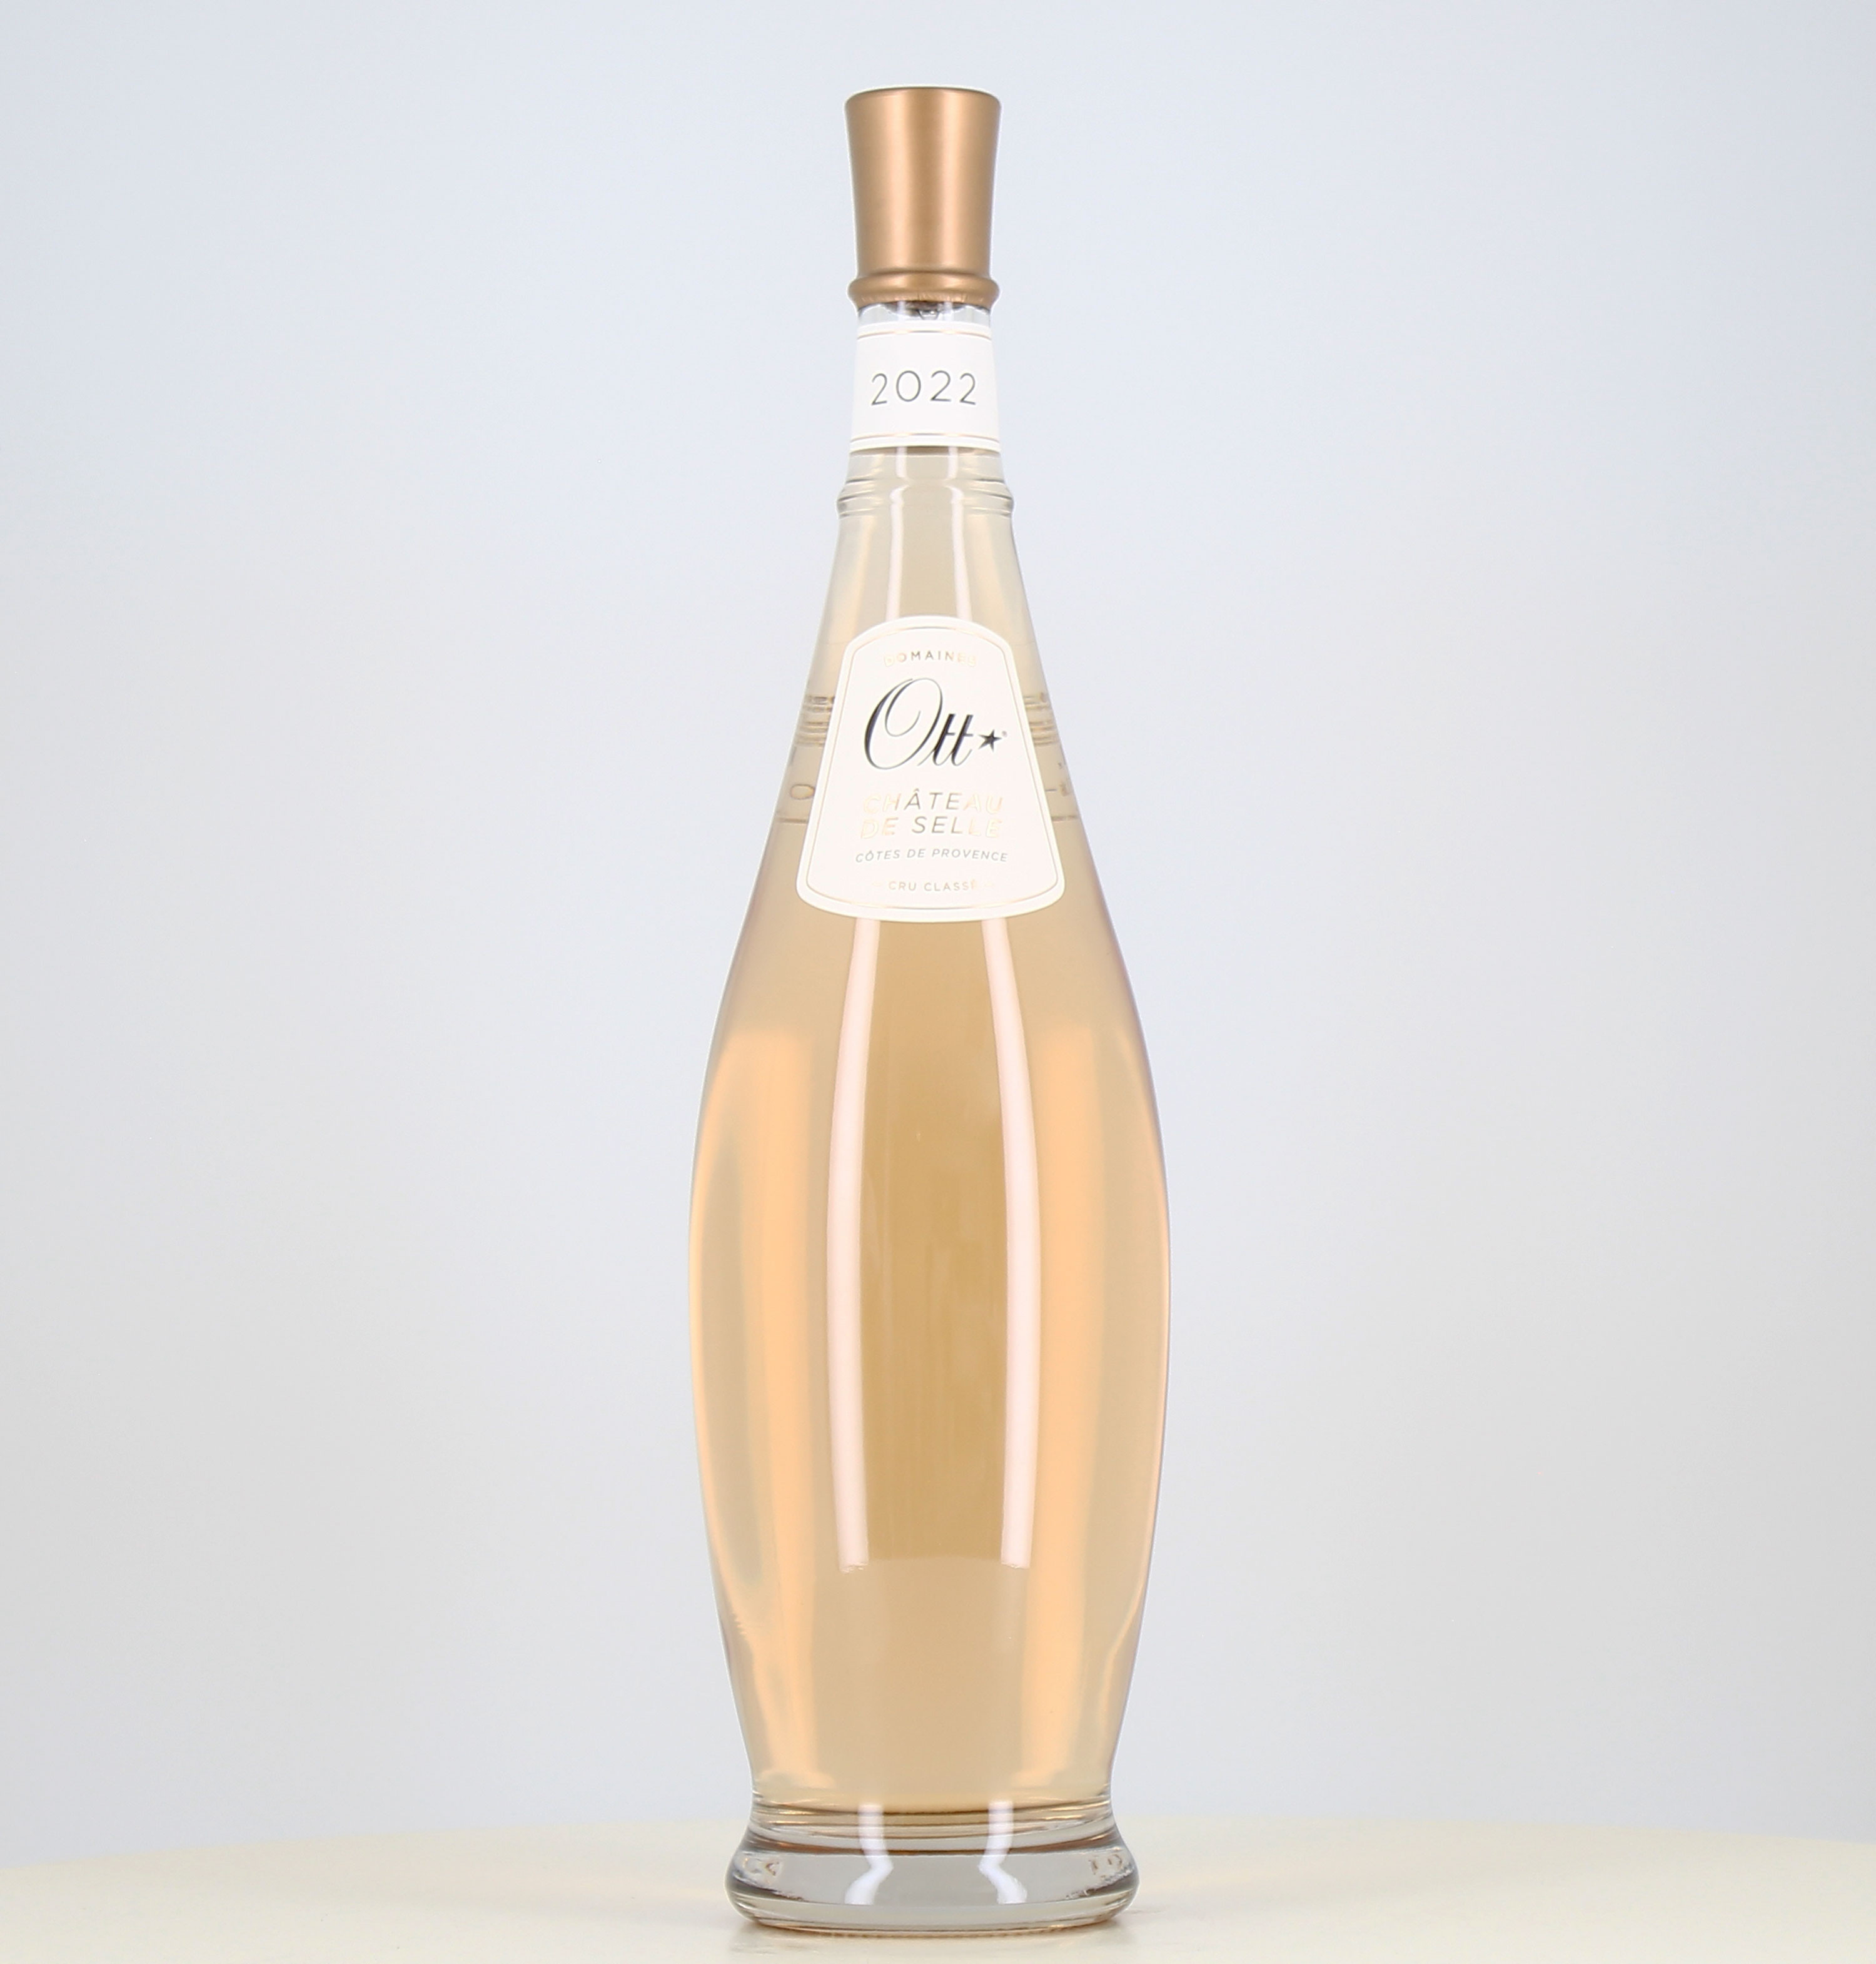 Jéroboam rosé wine Ott Côtes de Provence Château de Selle 2022 